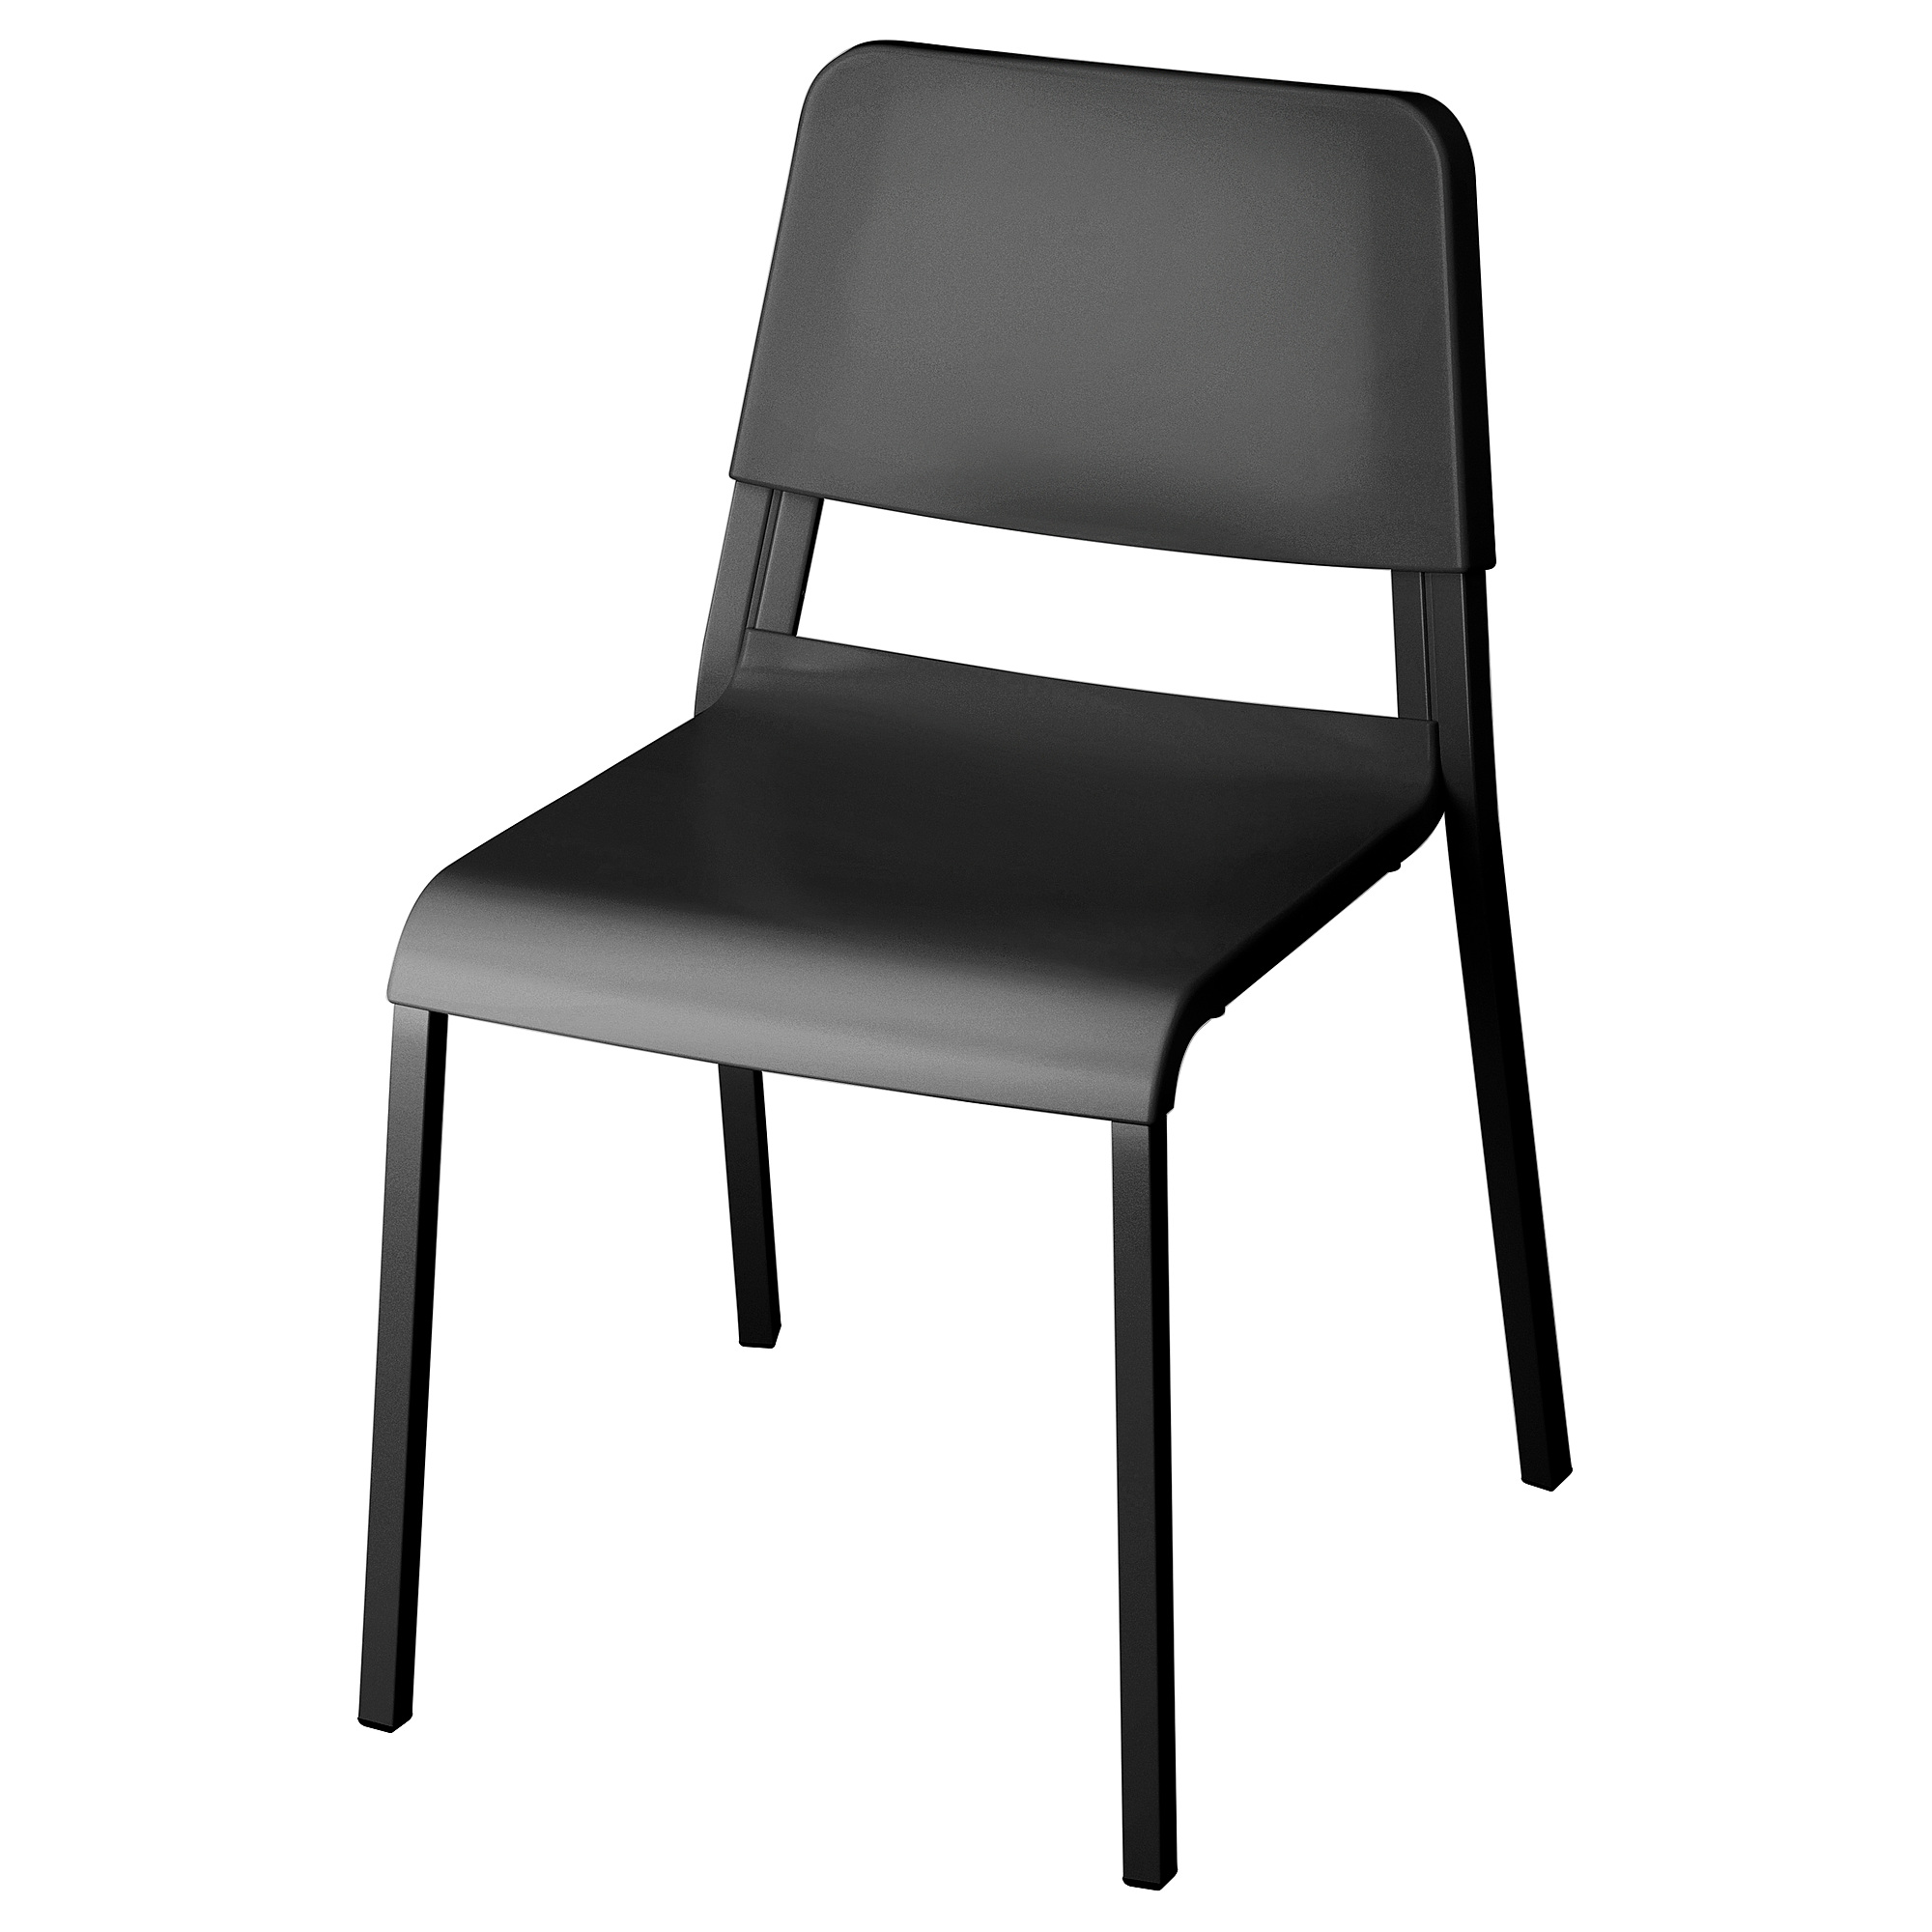 TEODORES - 椅子, 黑色| IKEA 香港及澳門